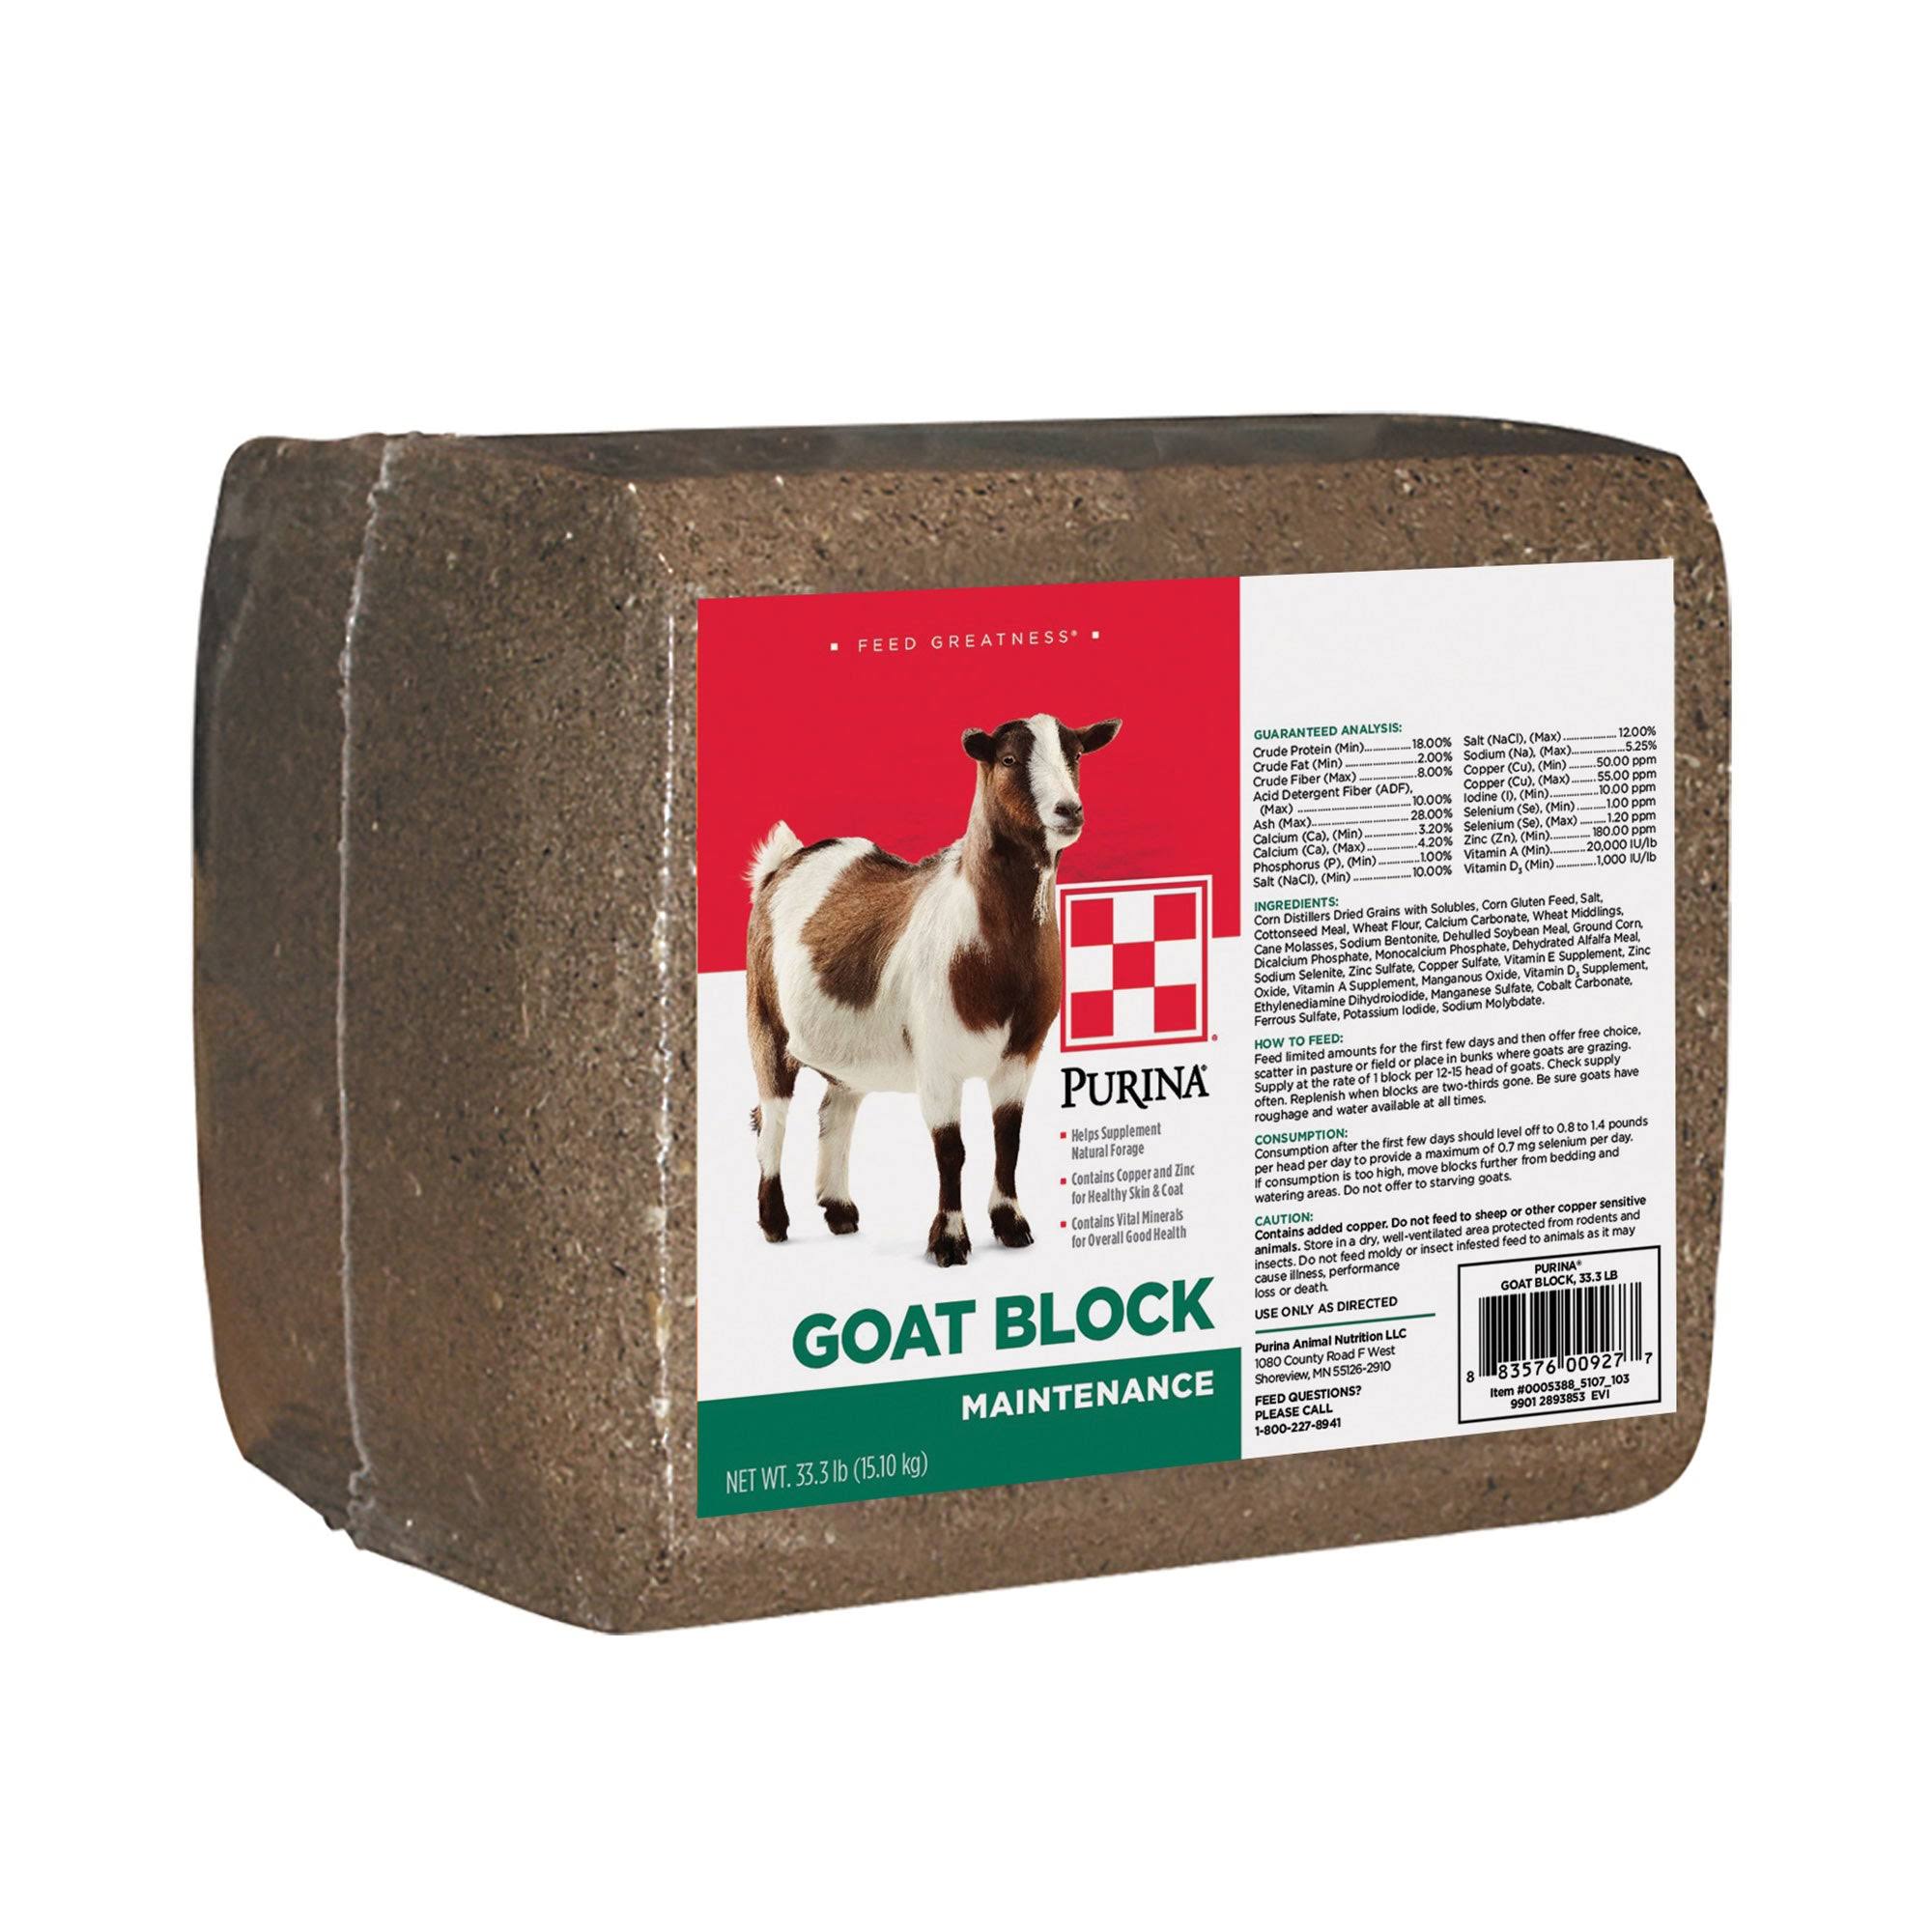 Purina Goat Block - 33 lb